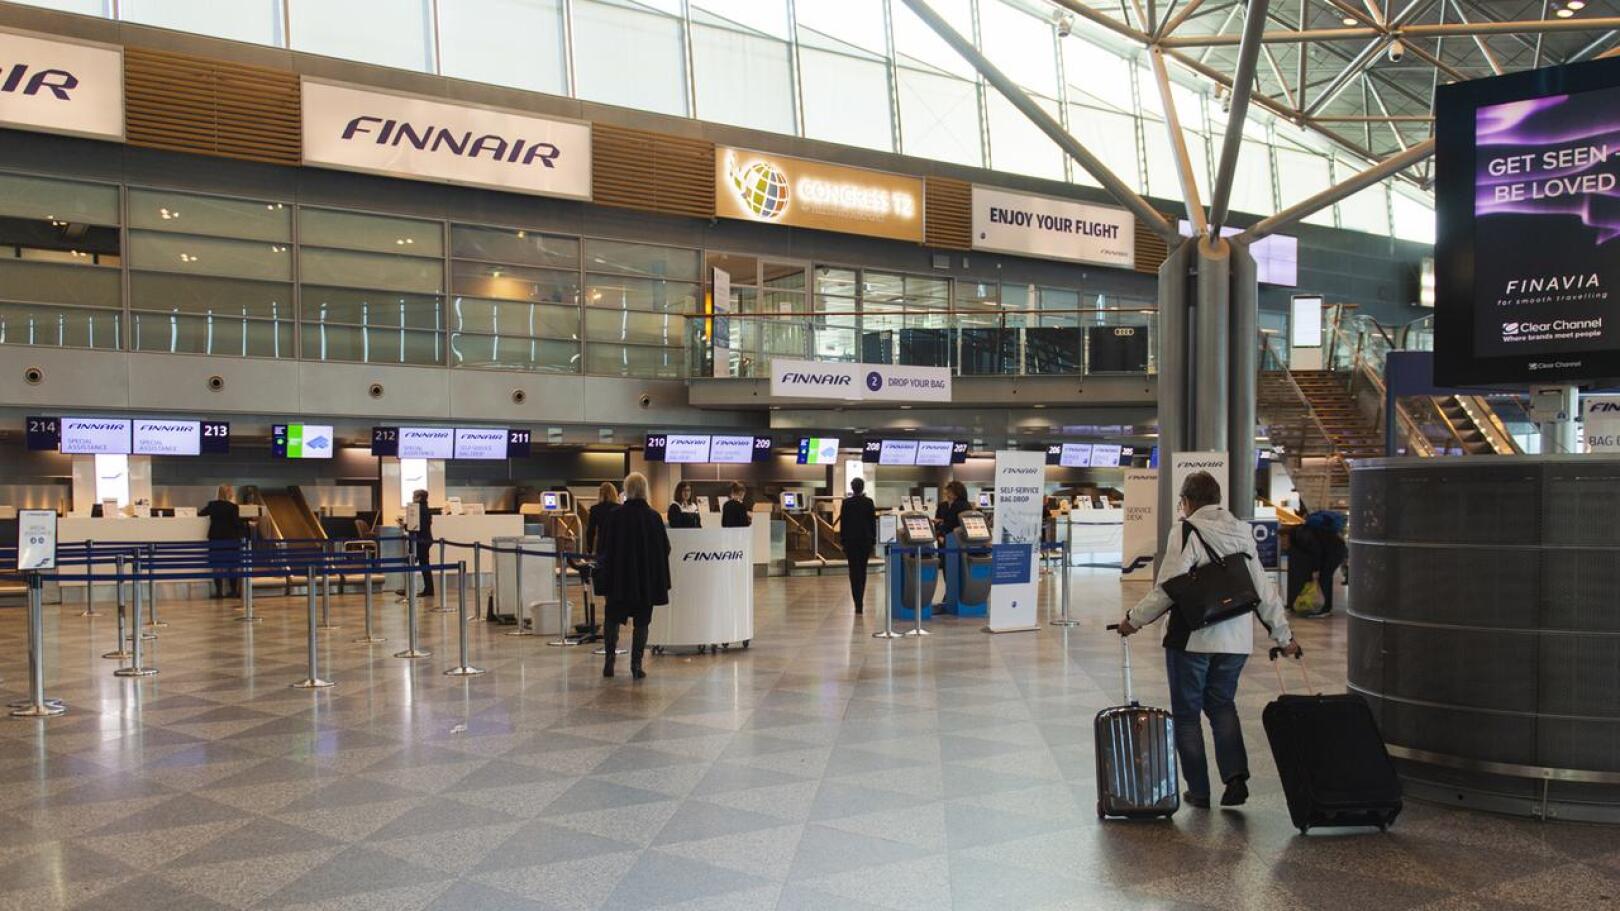 Koronavirus on hiljentänyt Helsinki-Vantaan lentoaseman. Kuva on otettu maaliskuussa.